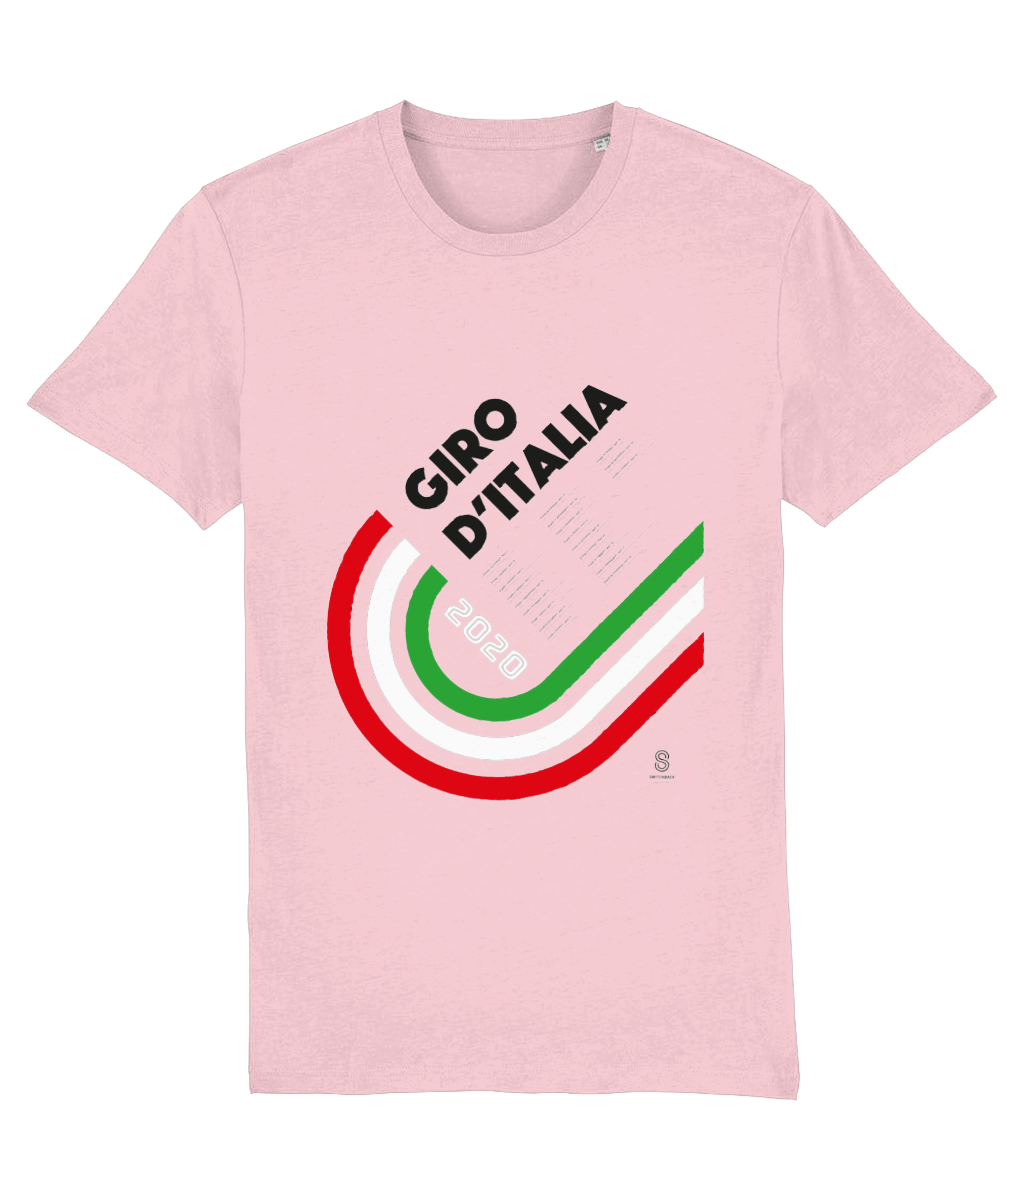 Giro d’Italia 2020 T-Shirt